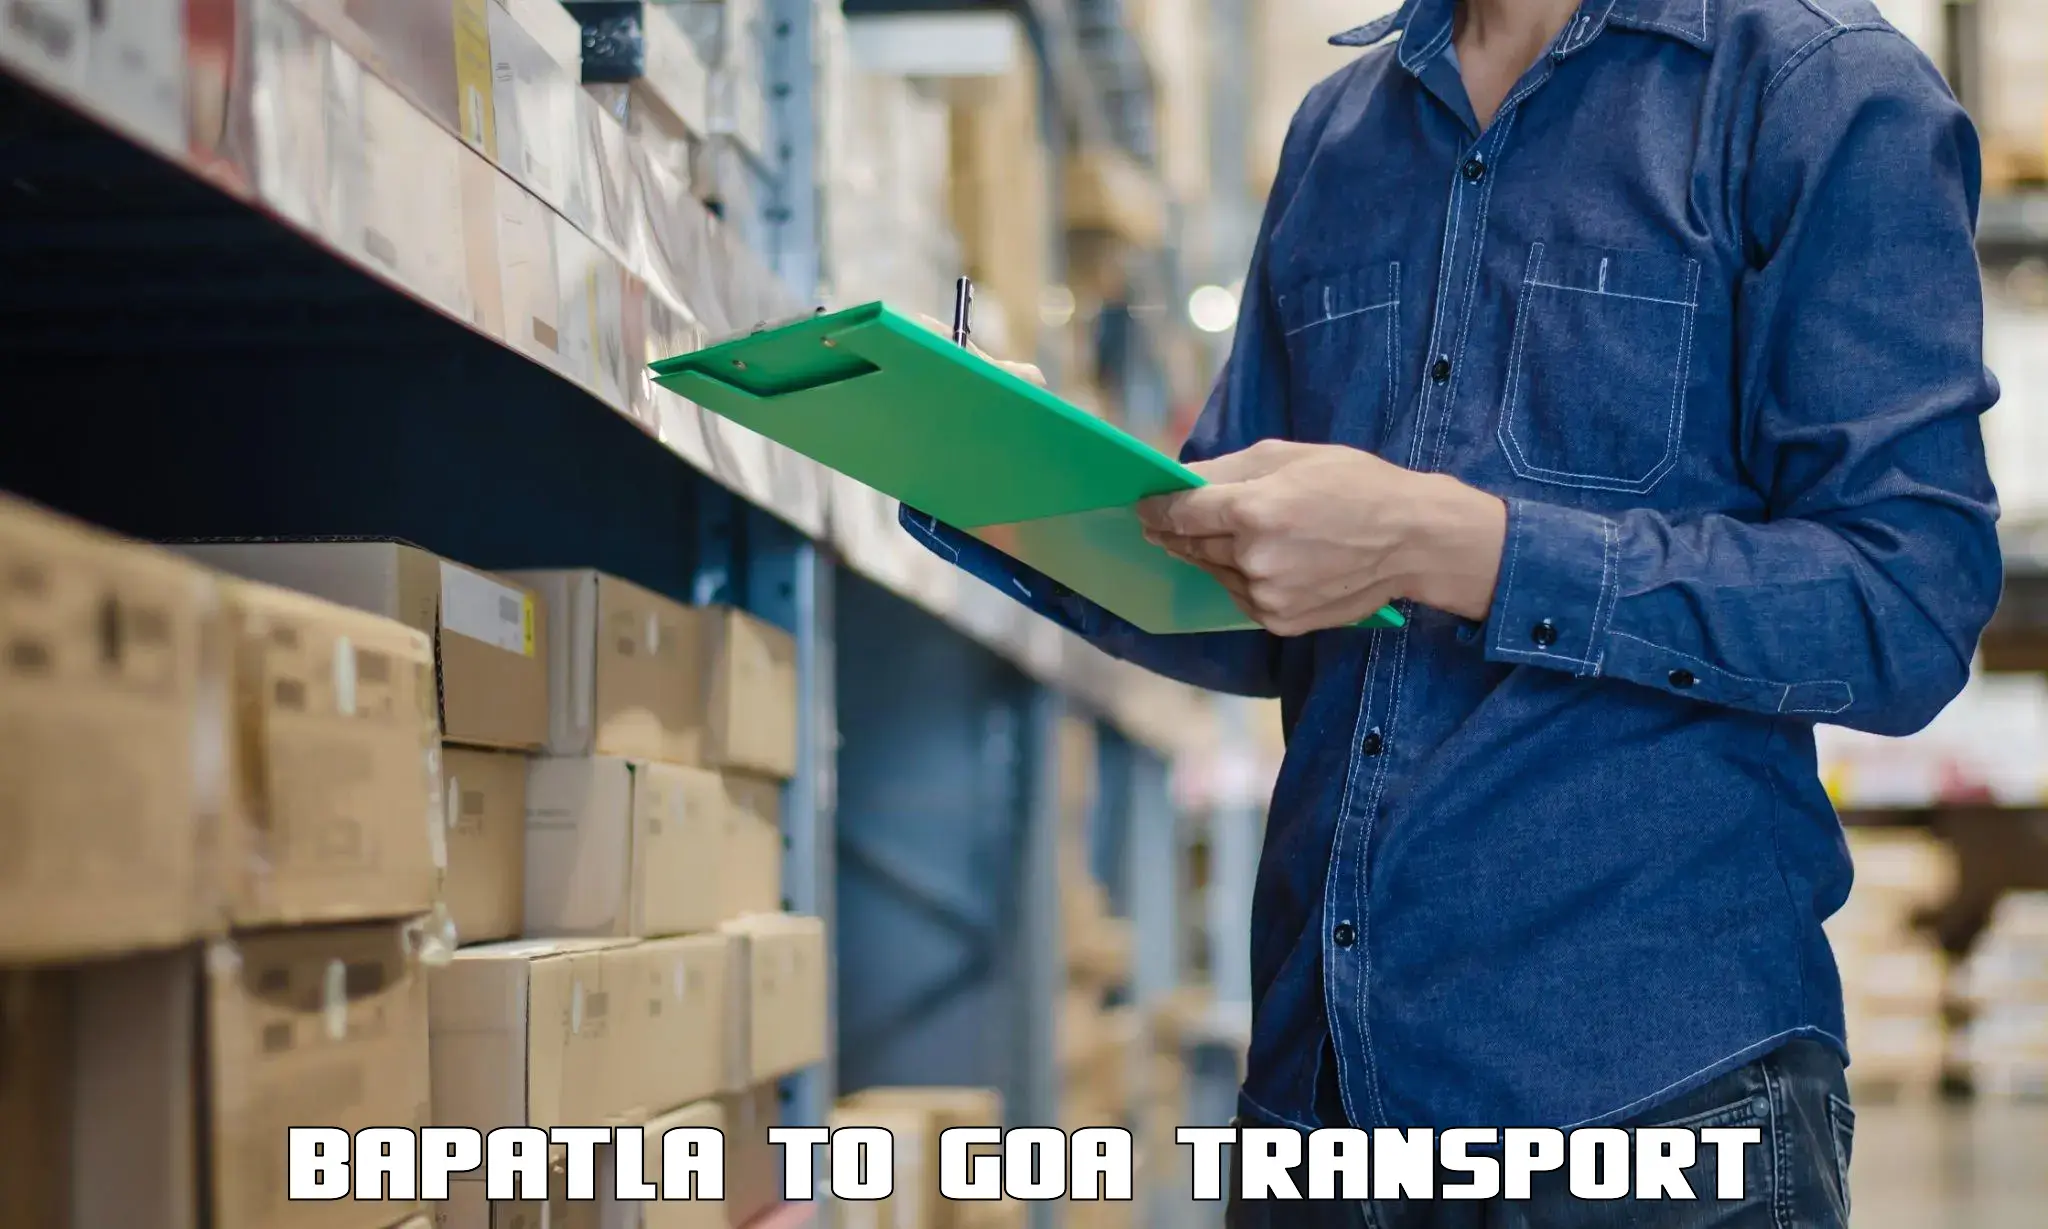 Commercial transport service Bapatla to Canacona